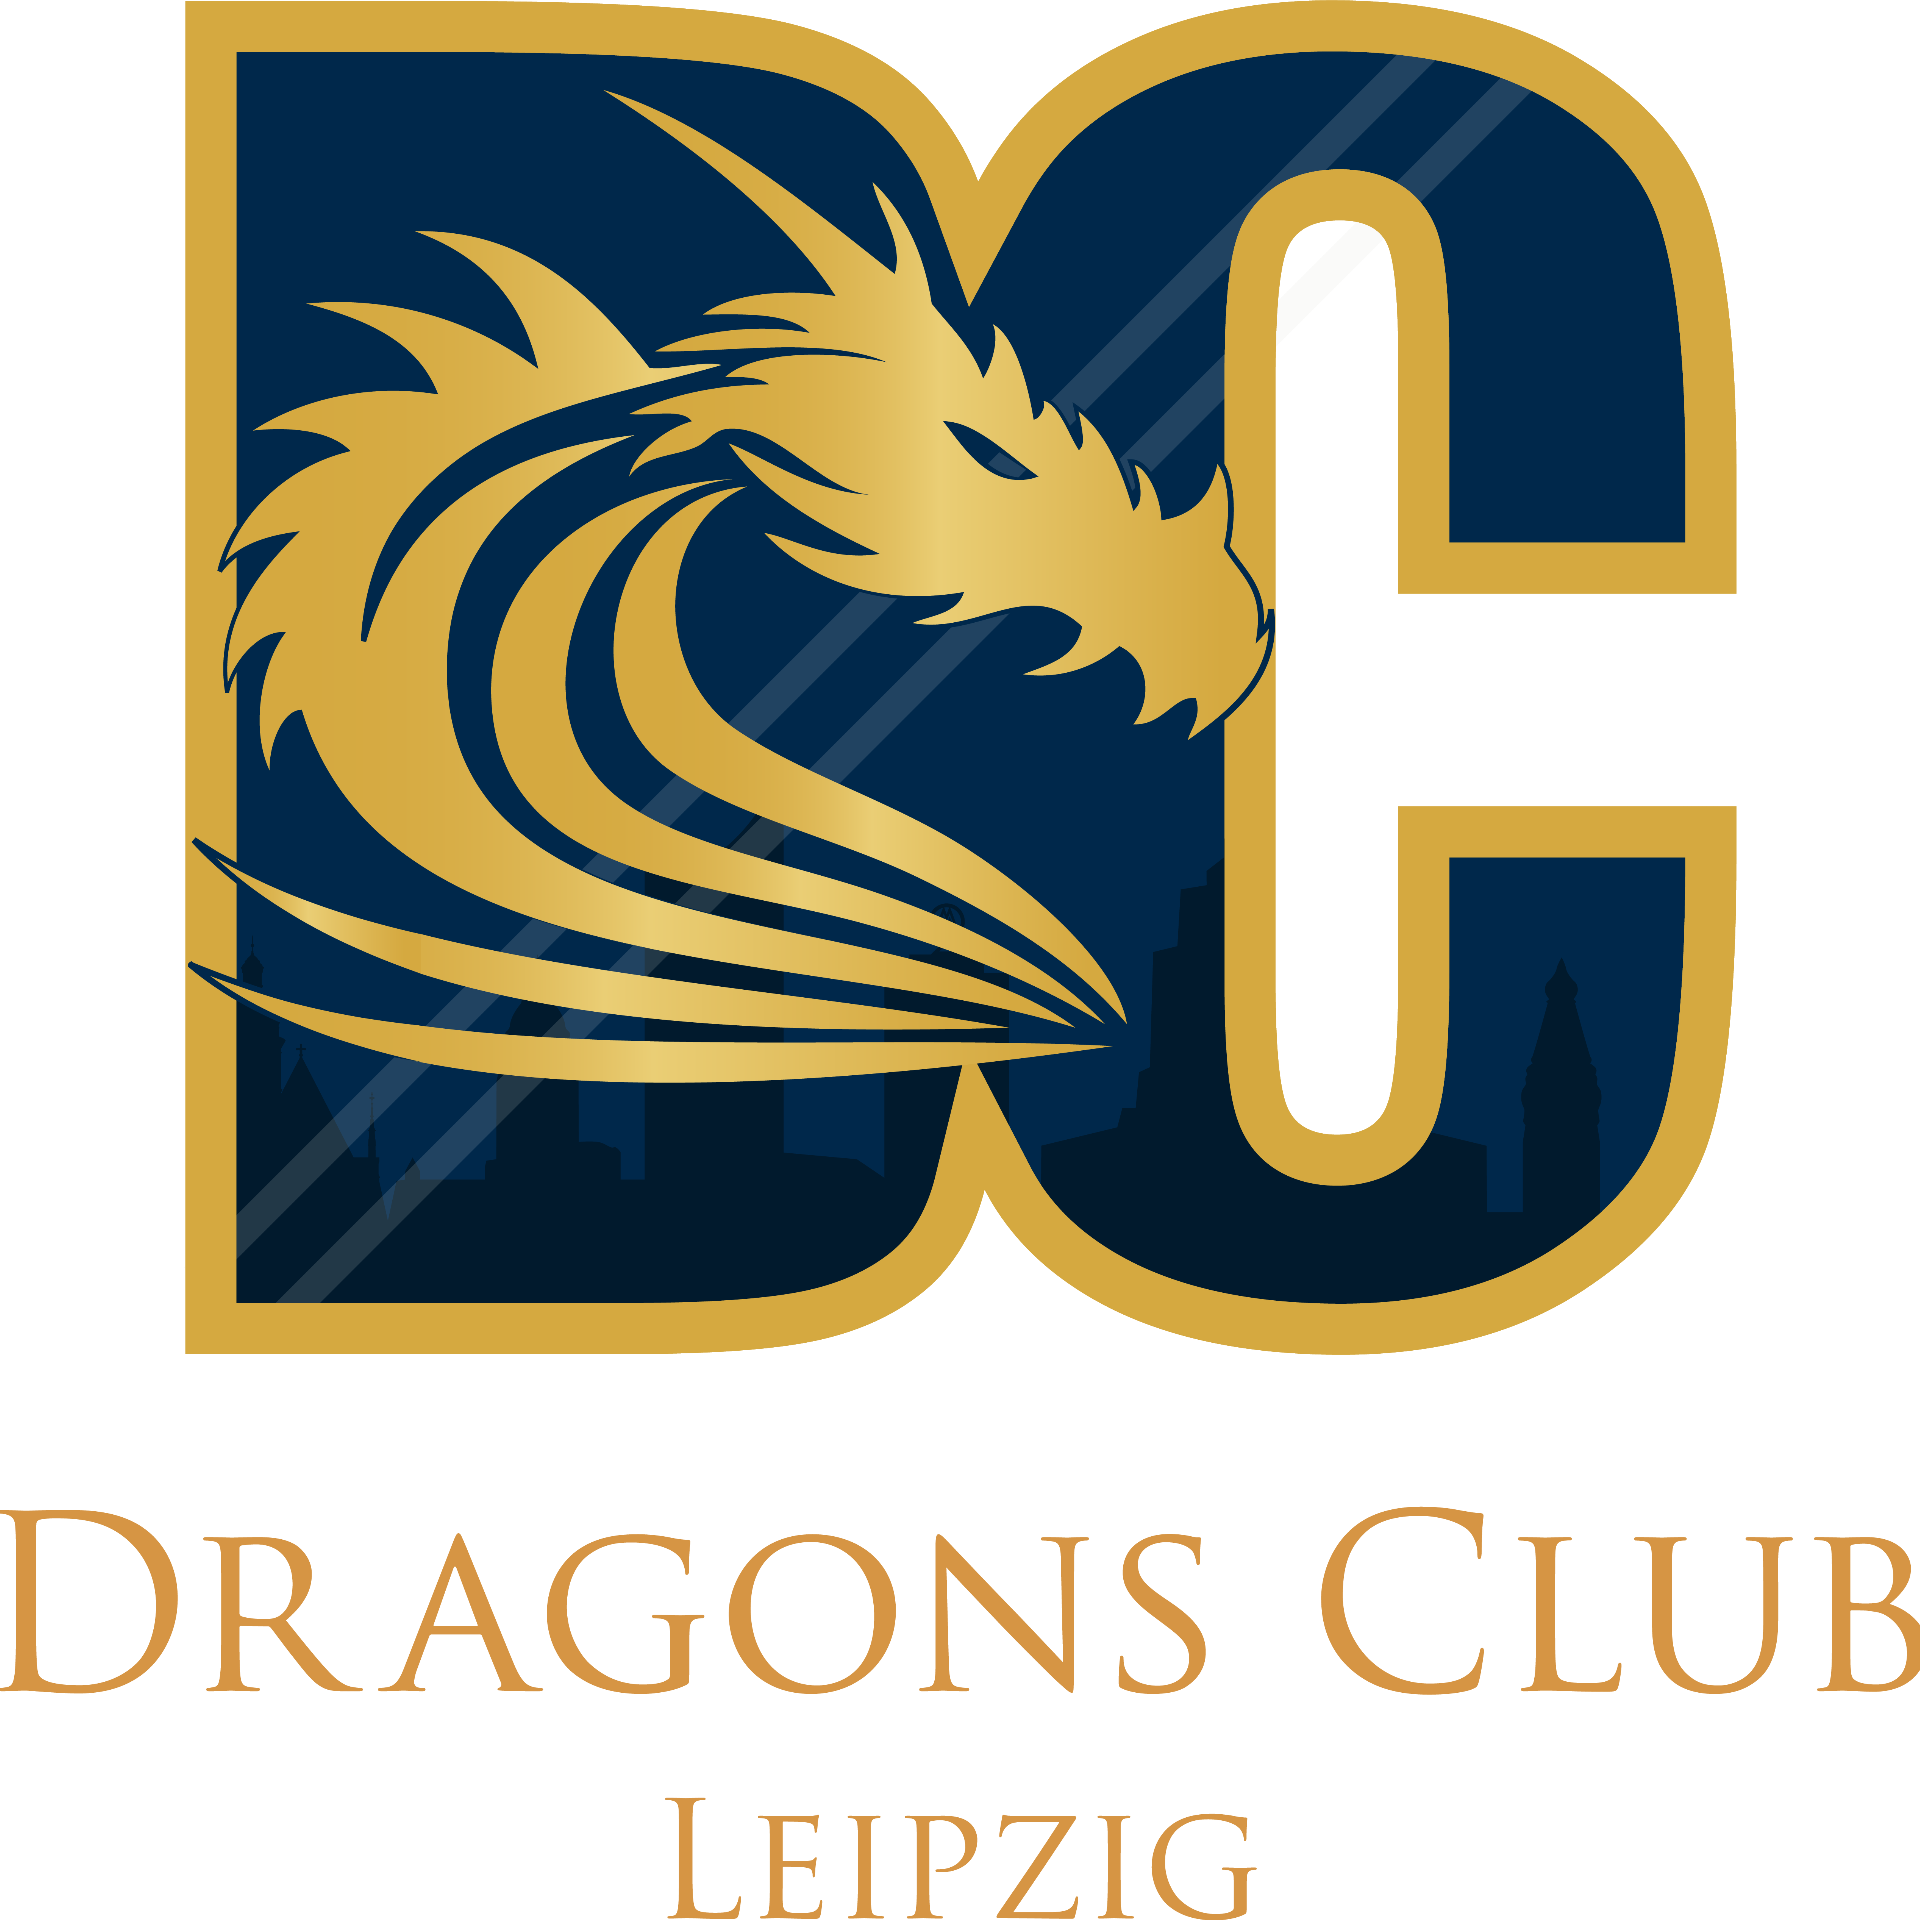 Dragons Club Leipzig